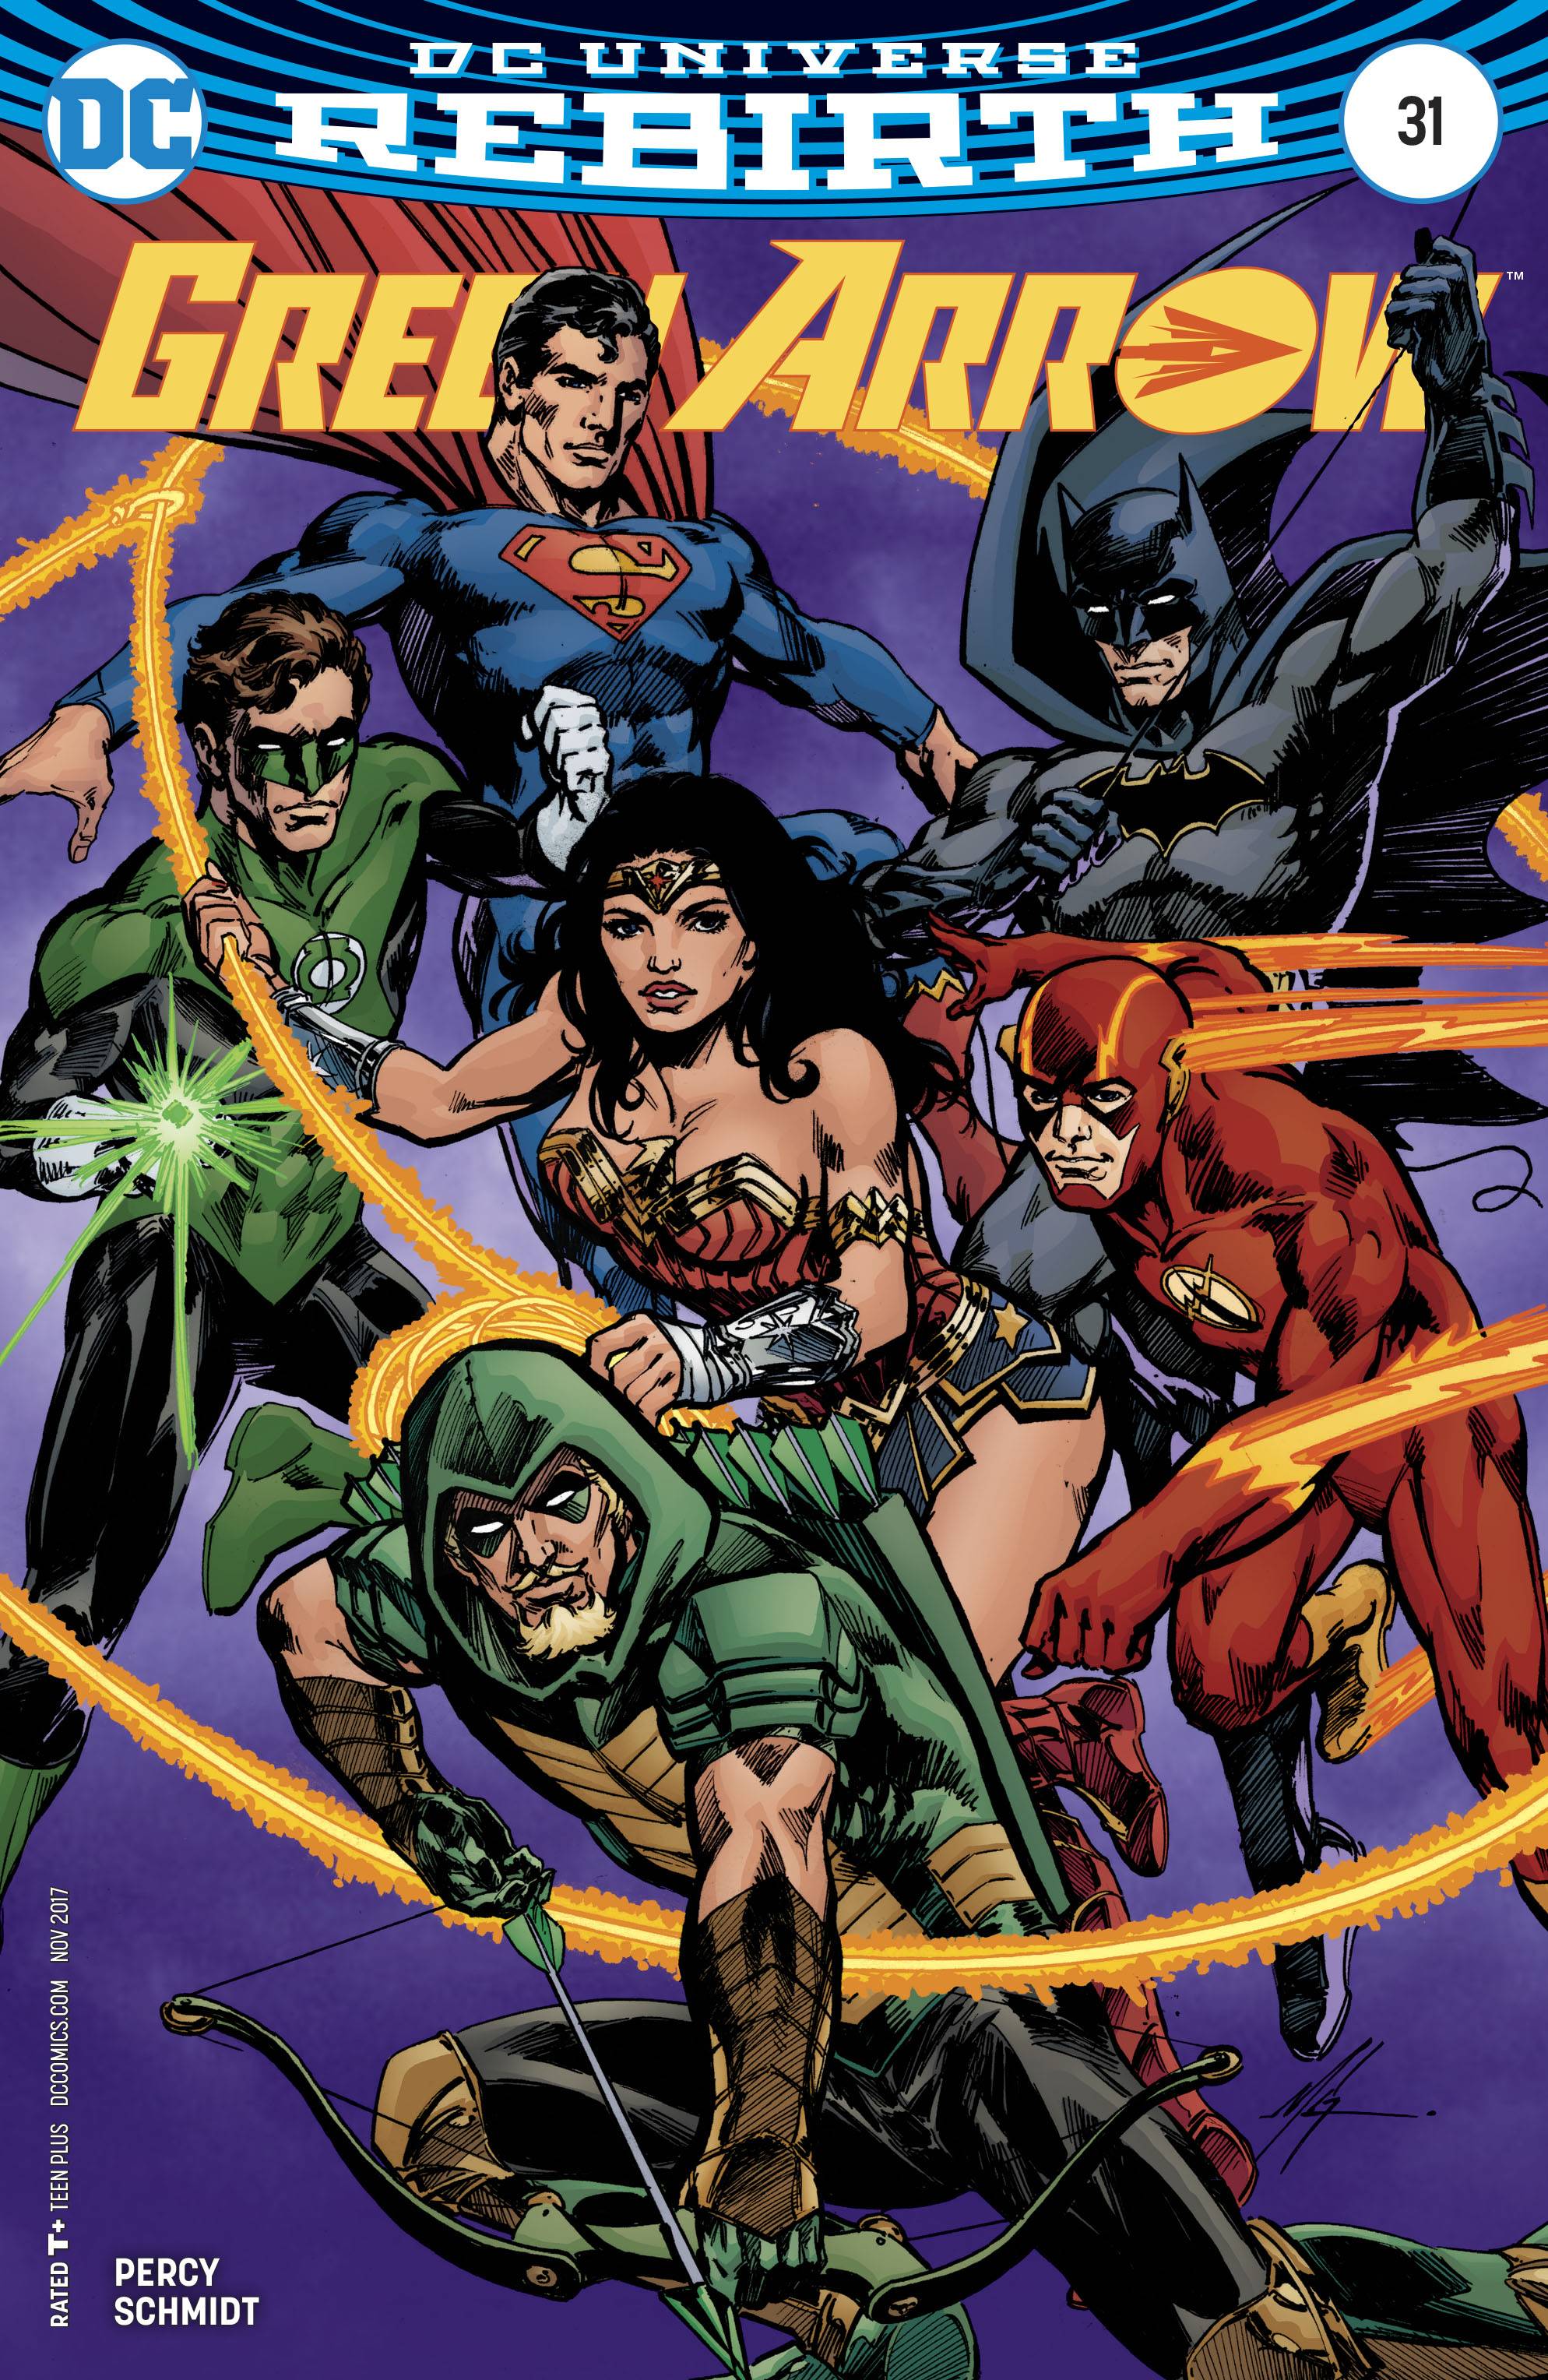 Green Arrow #31 Variant Edition (2016)